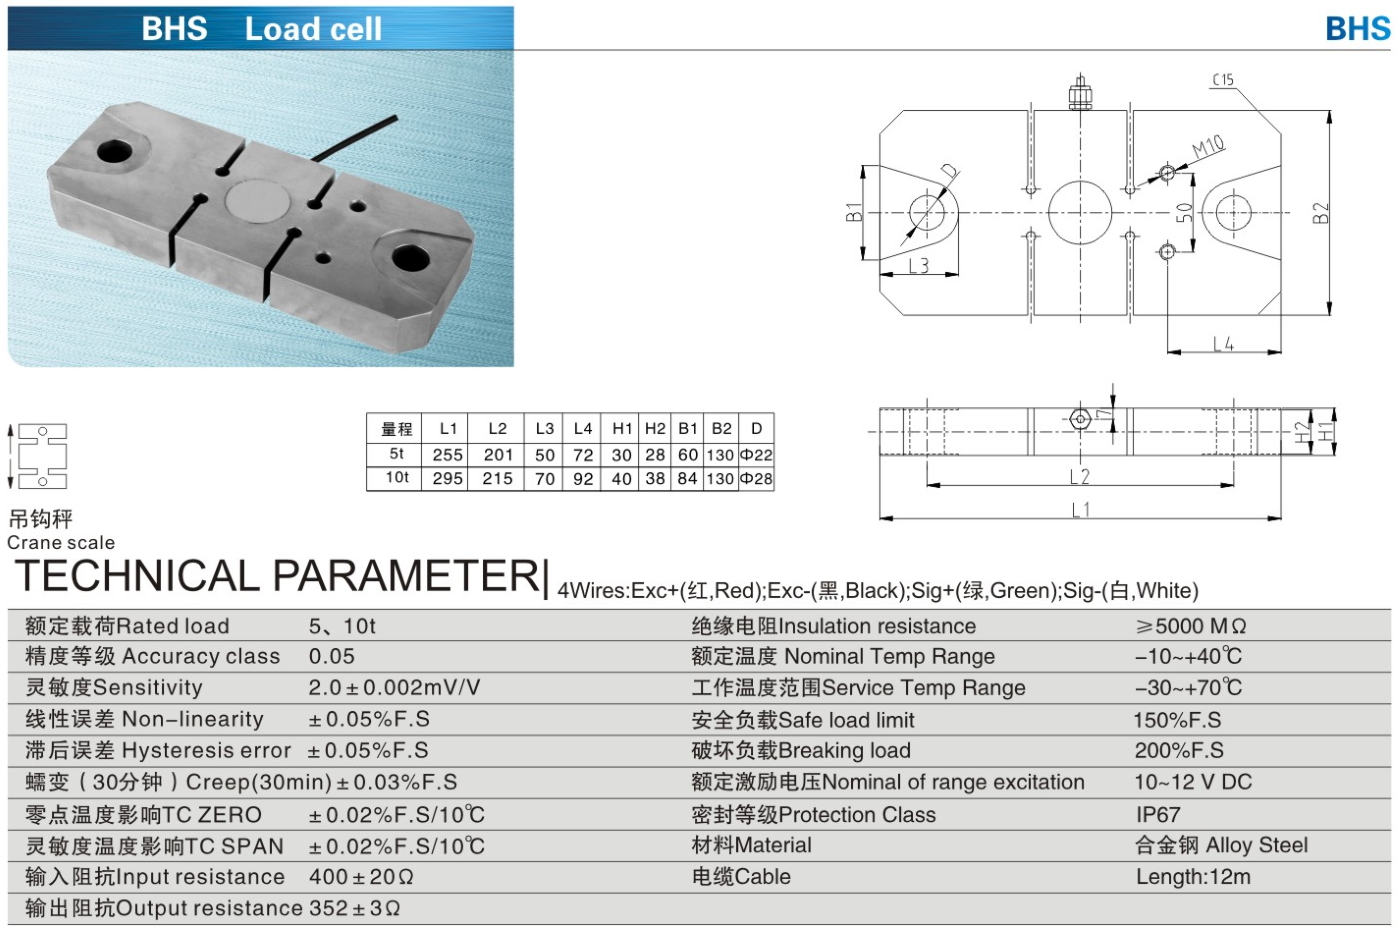 img/loadcell-images/double-ended-shear-beam/KELI_BHS-1_Loadcell-TTM_Teknoloji.jpg